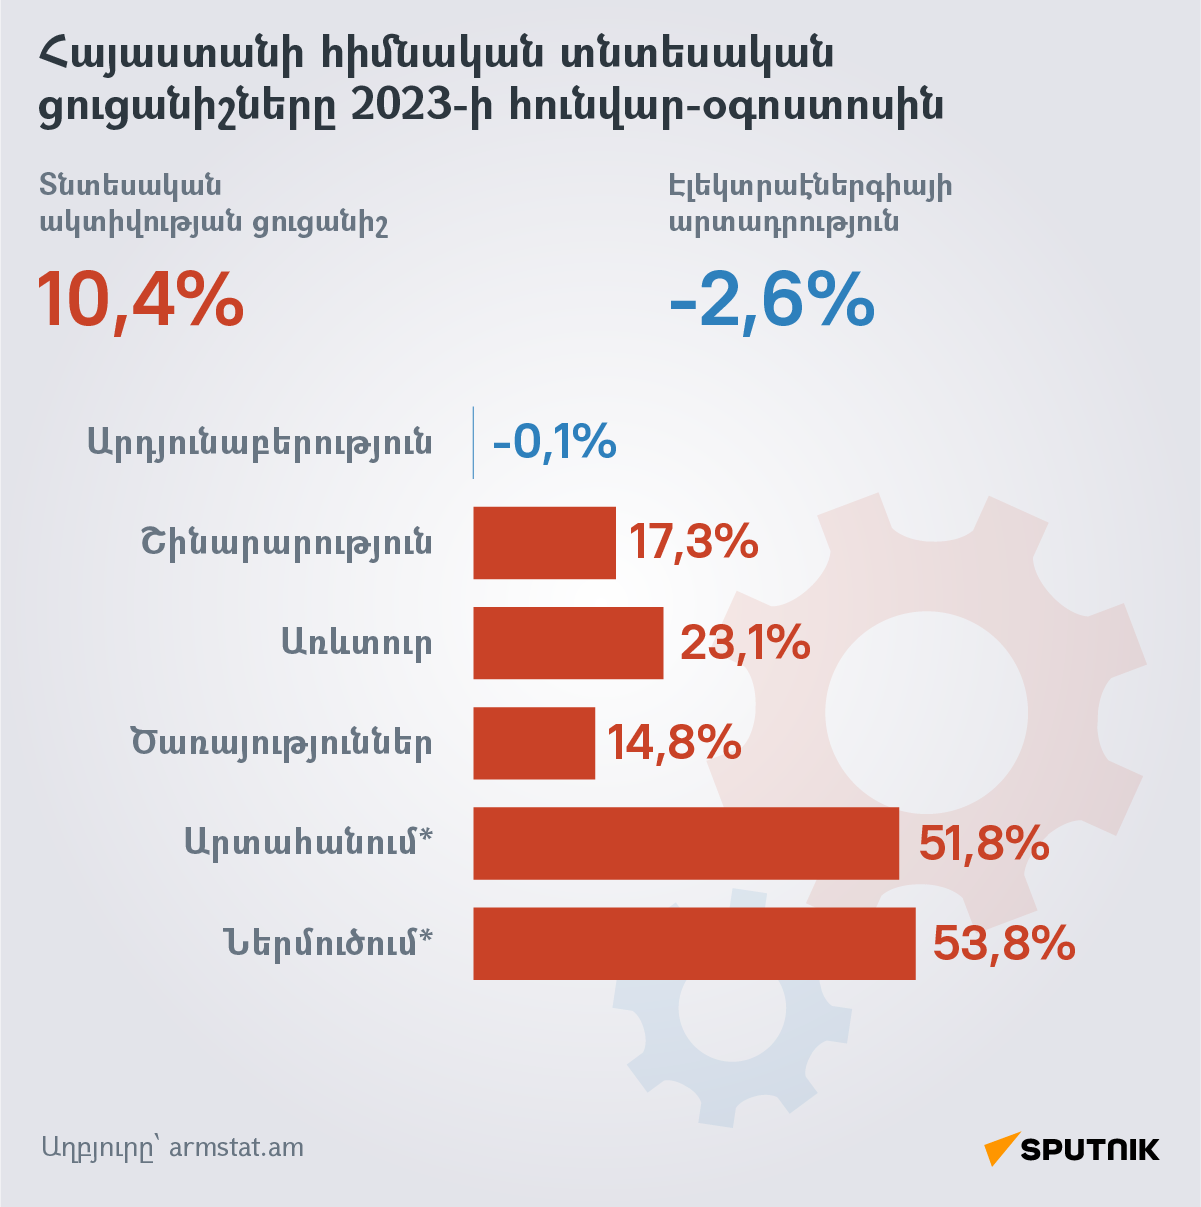 Հայաստանի հիմնական տնտեսական ցուցանիշները 2023-ի հունվար-օգոստոսին - Sputnik Արմենիա